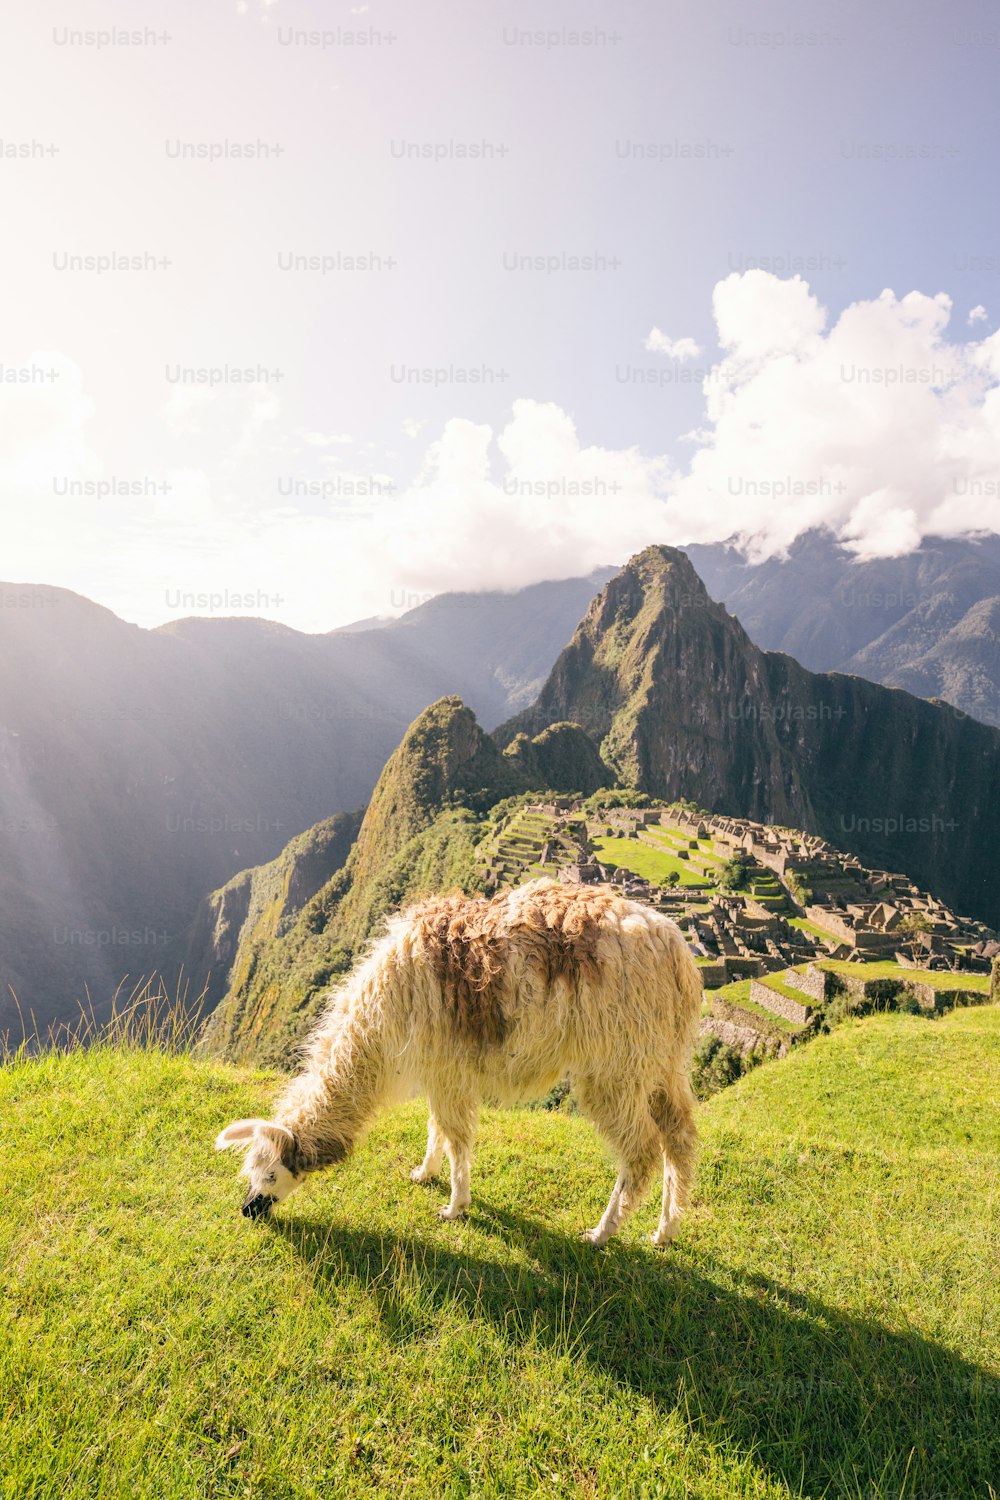 Un lama broutant dans un champ herbeux avec des montagnes en arrière-plan